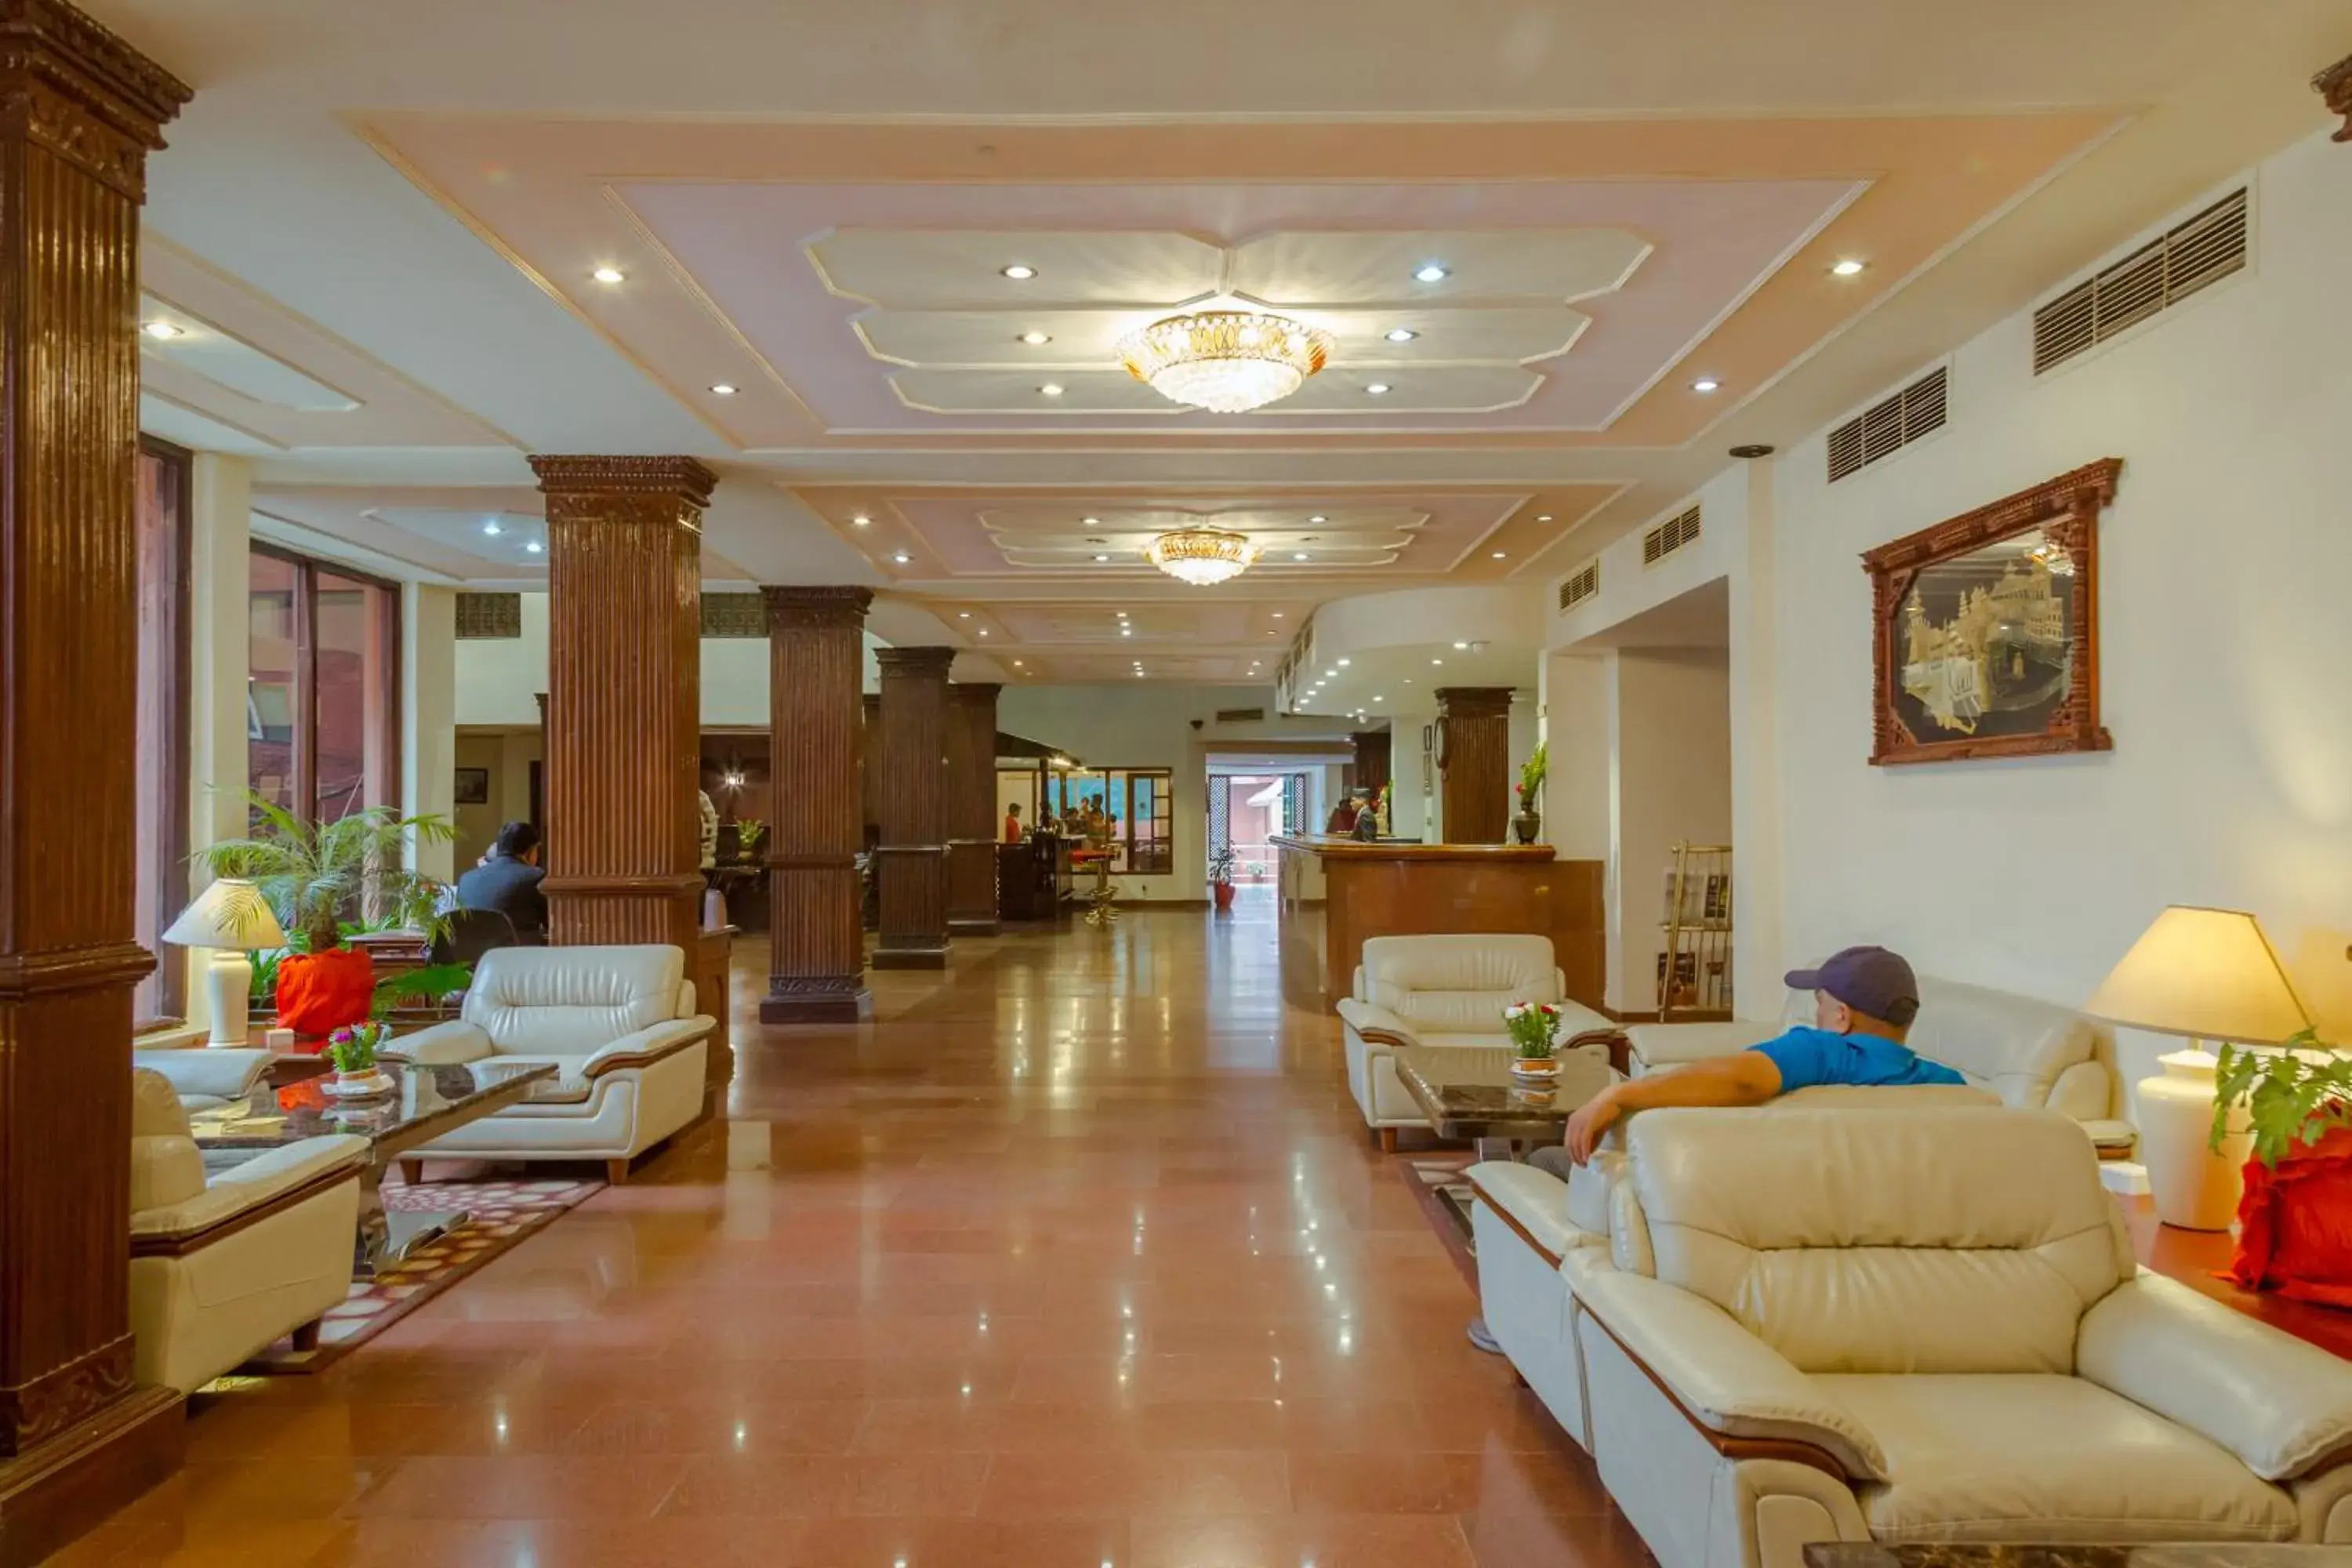 Lobby or reception in Hotel Vaishali